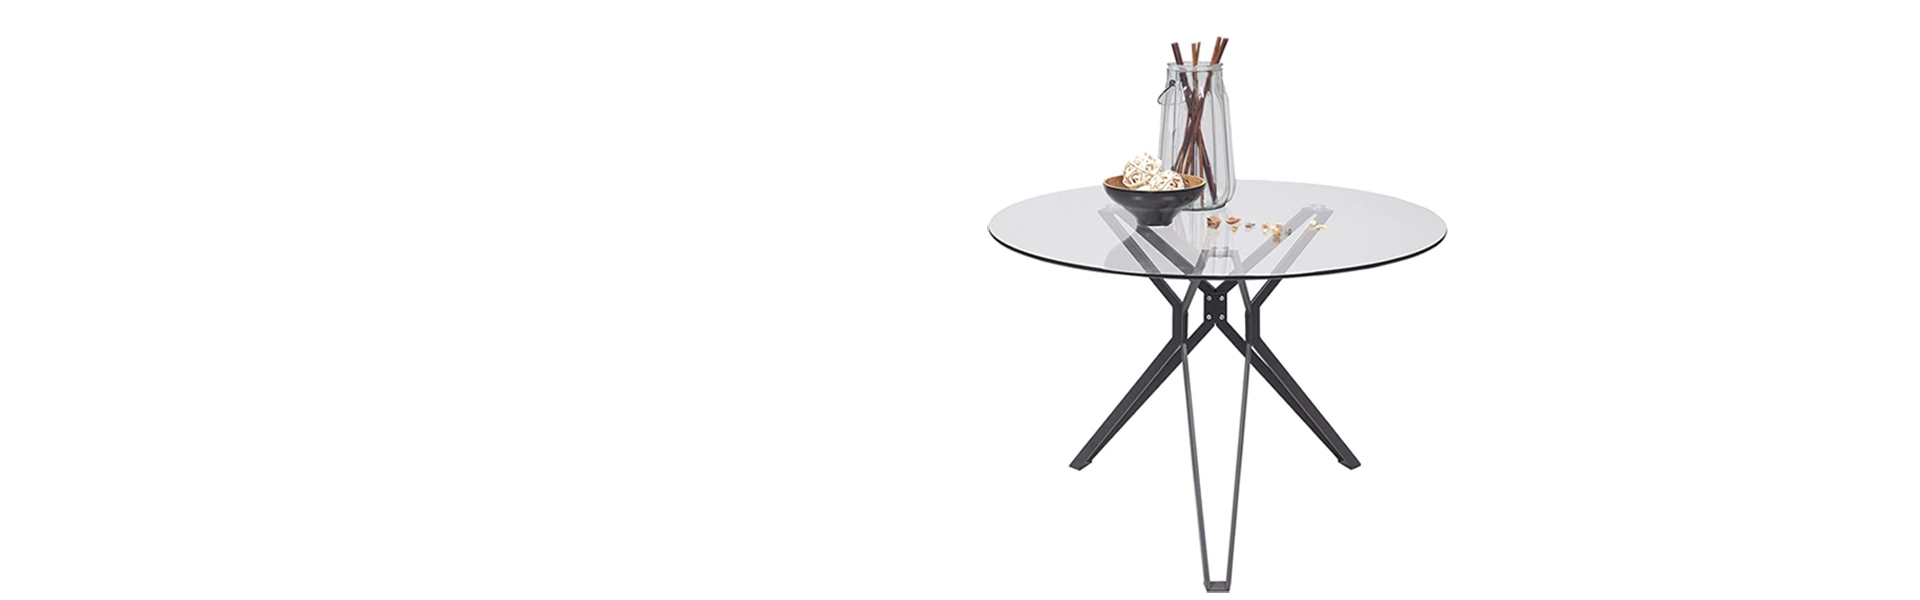 Mesa de comedor o cocina ERICA sobre de cristal de 110 cm y estructura de metal color negro